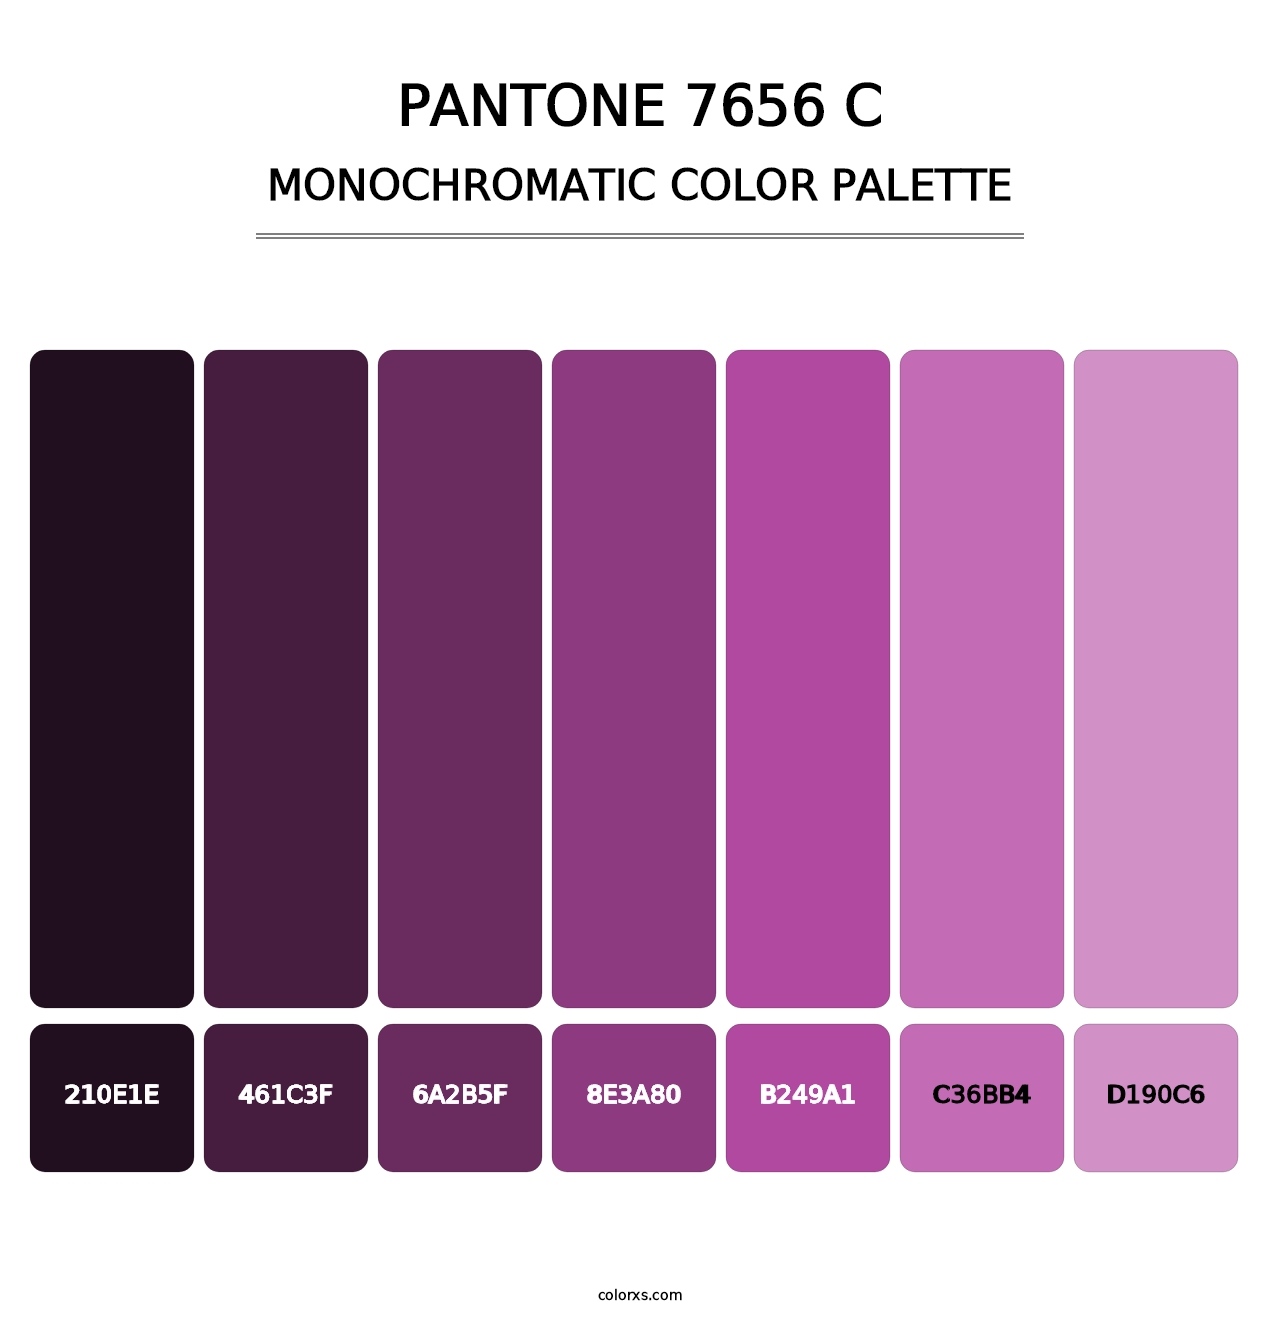 PANTONE 7656 C - Monochromatic Color Palette